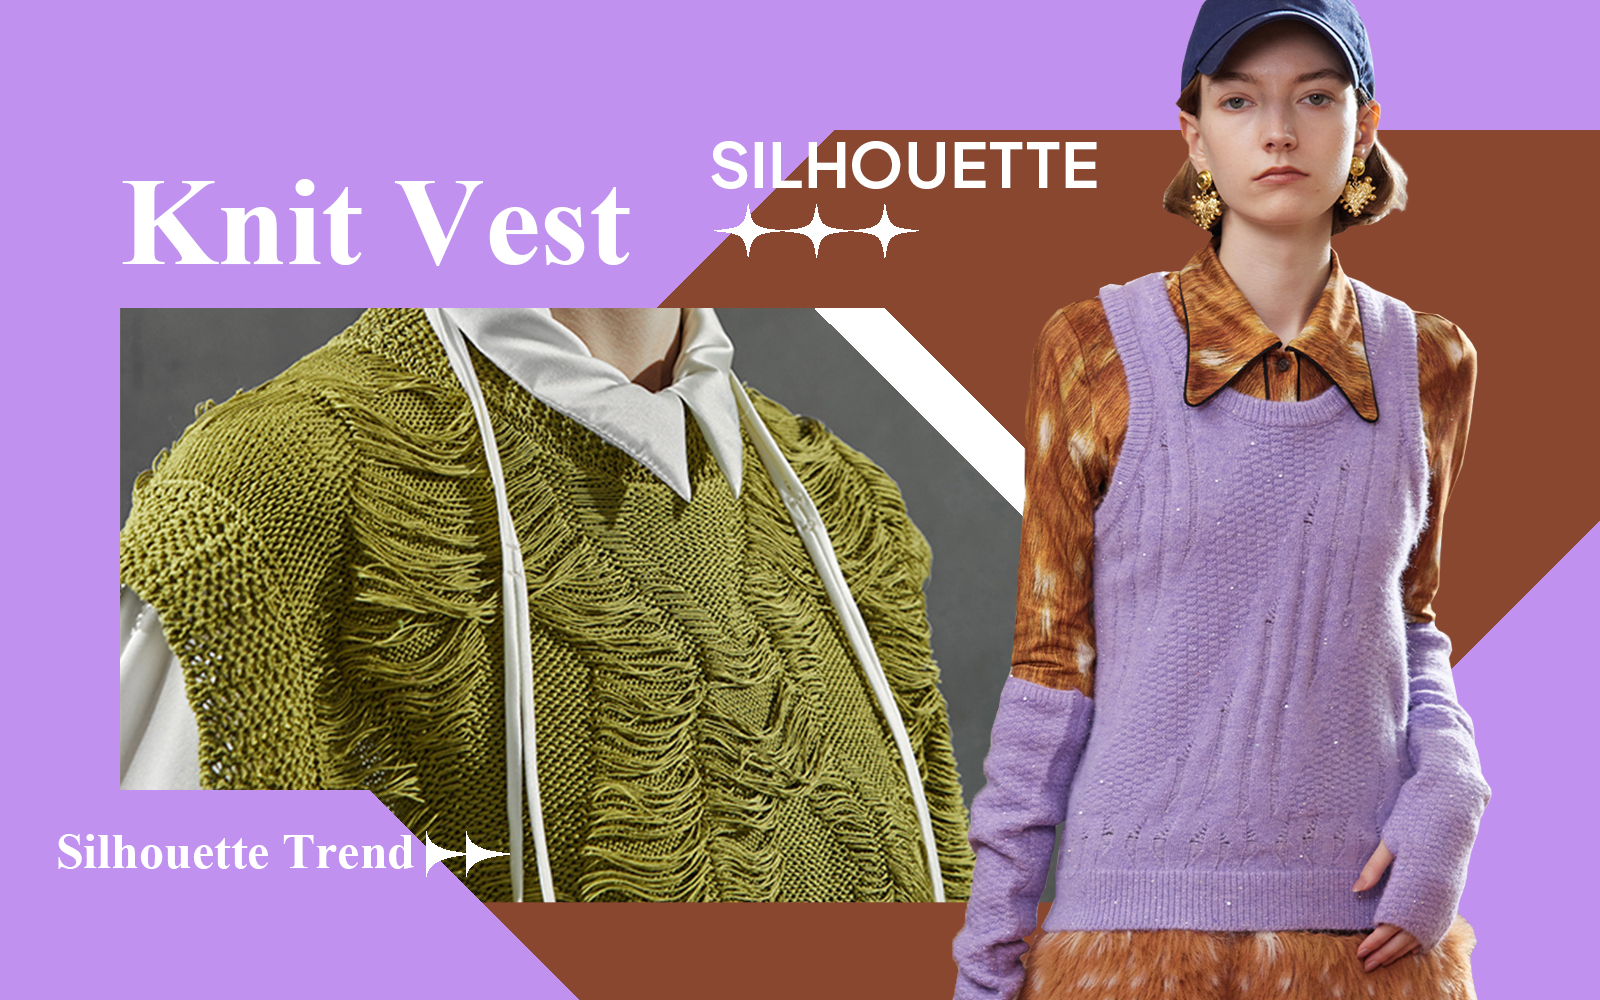 Vest -- S/S 2025 Silhouette Trend for Women's Knitwear